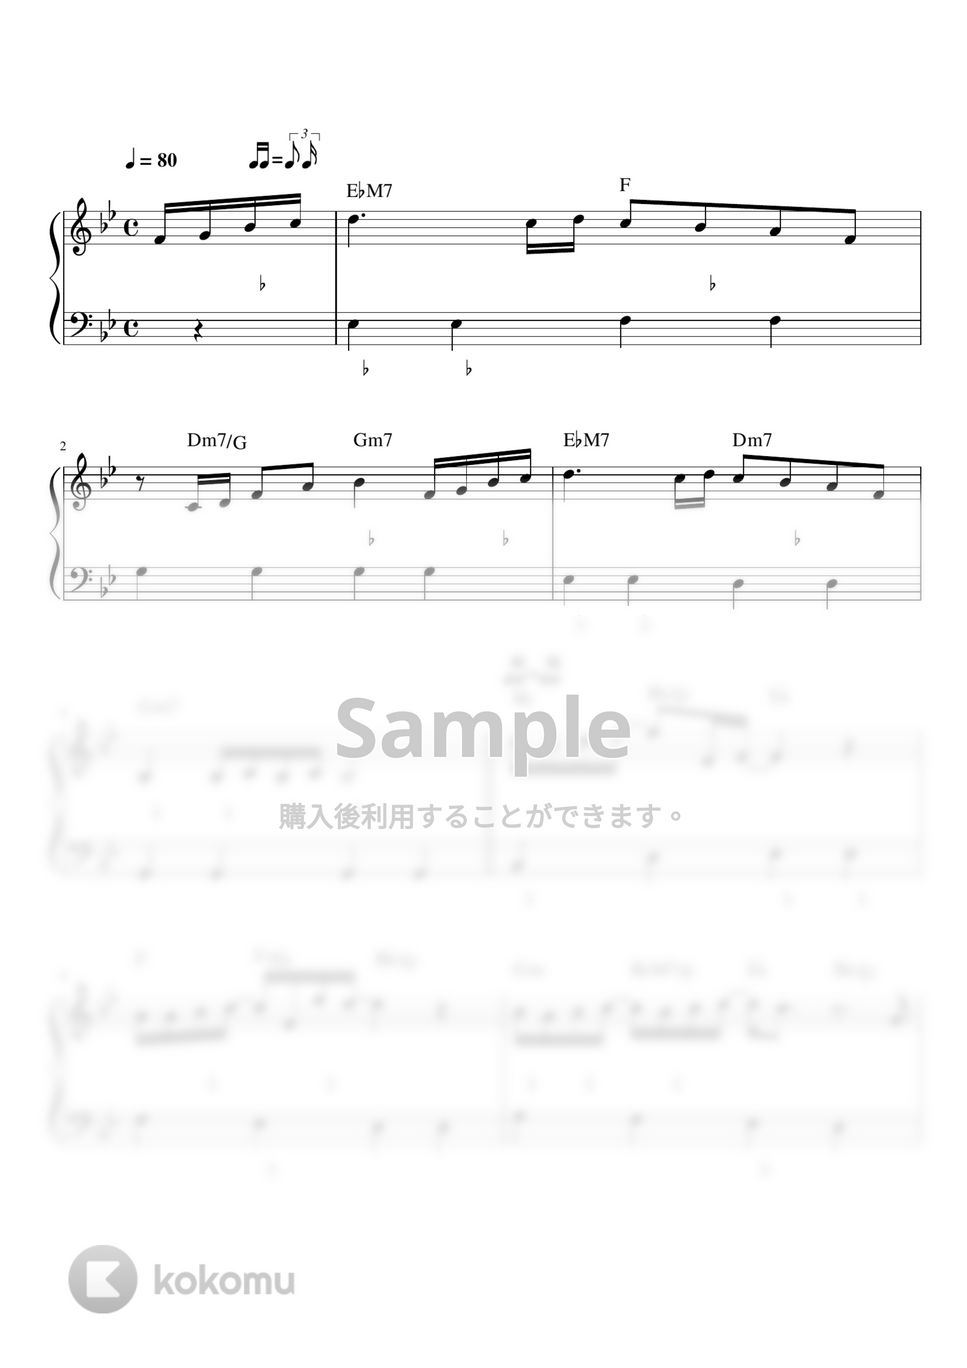 小田和正 - たしかなこと (ピアノ楽譜 / かんたん両手 / 歌詞付き / ドレミ付き / 初心者向き) by piano.tokyo